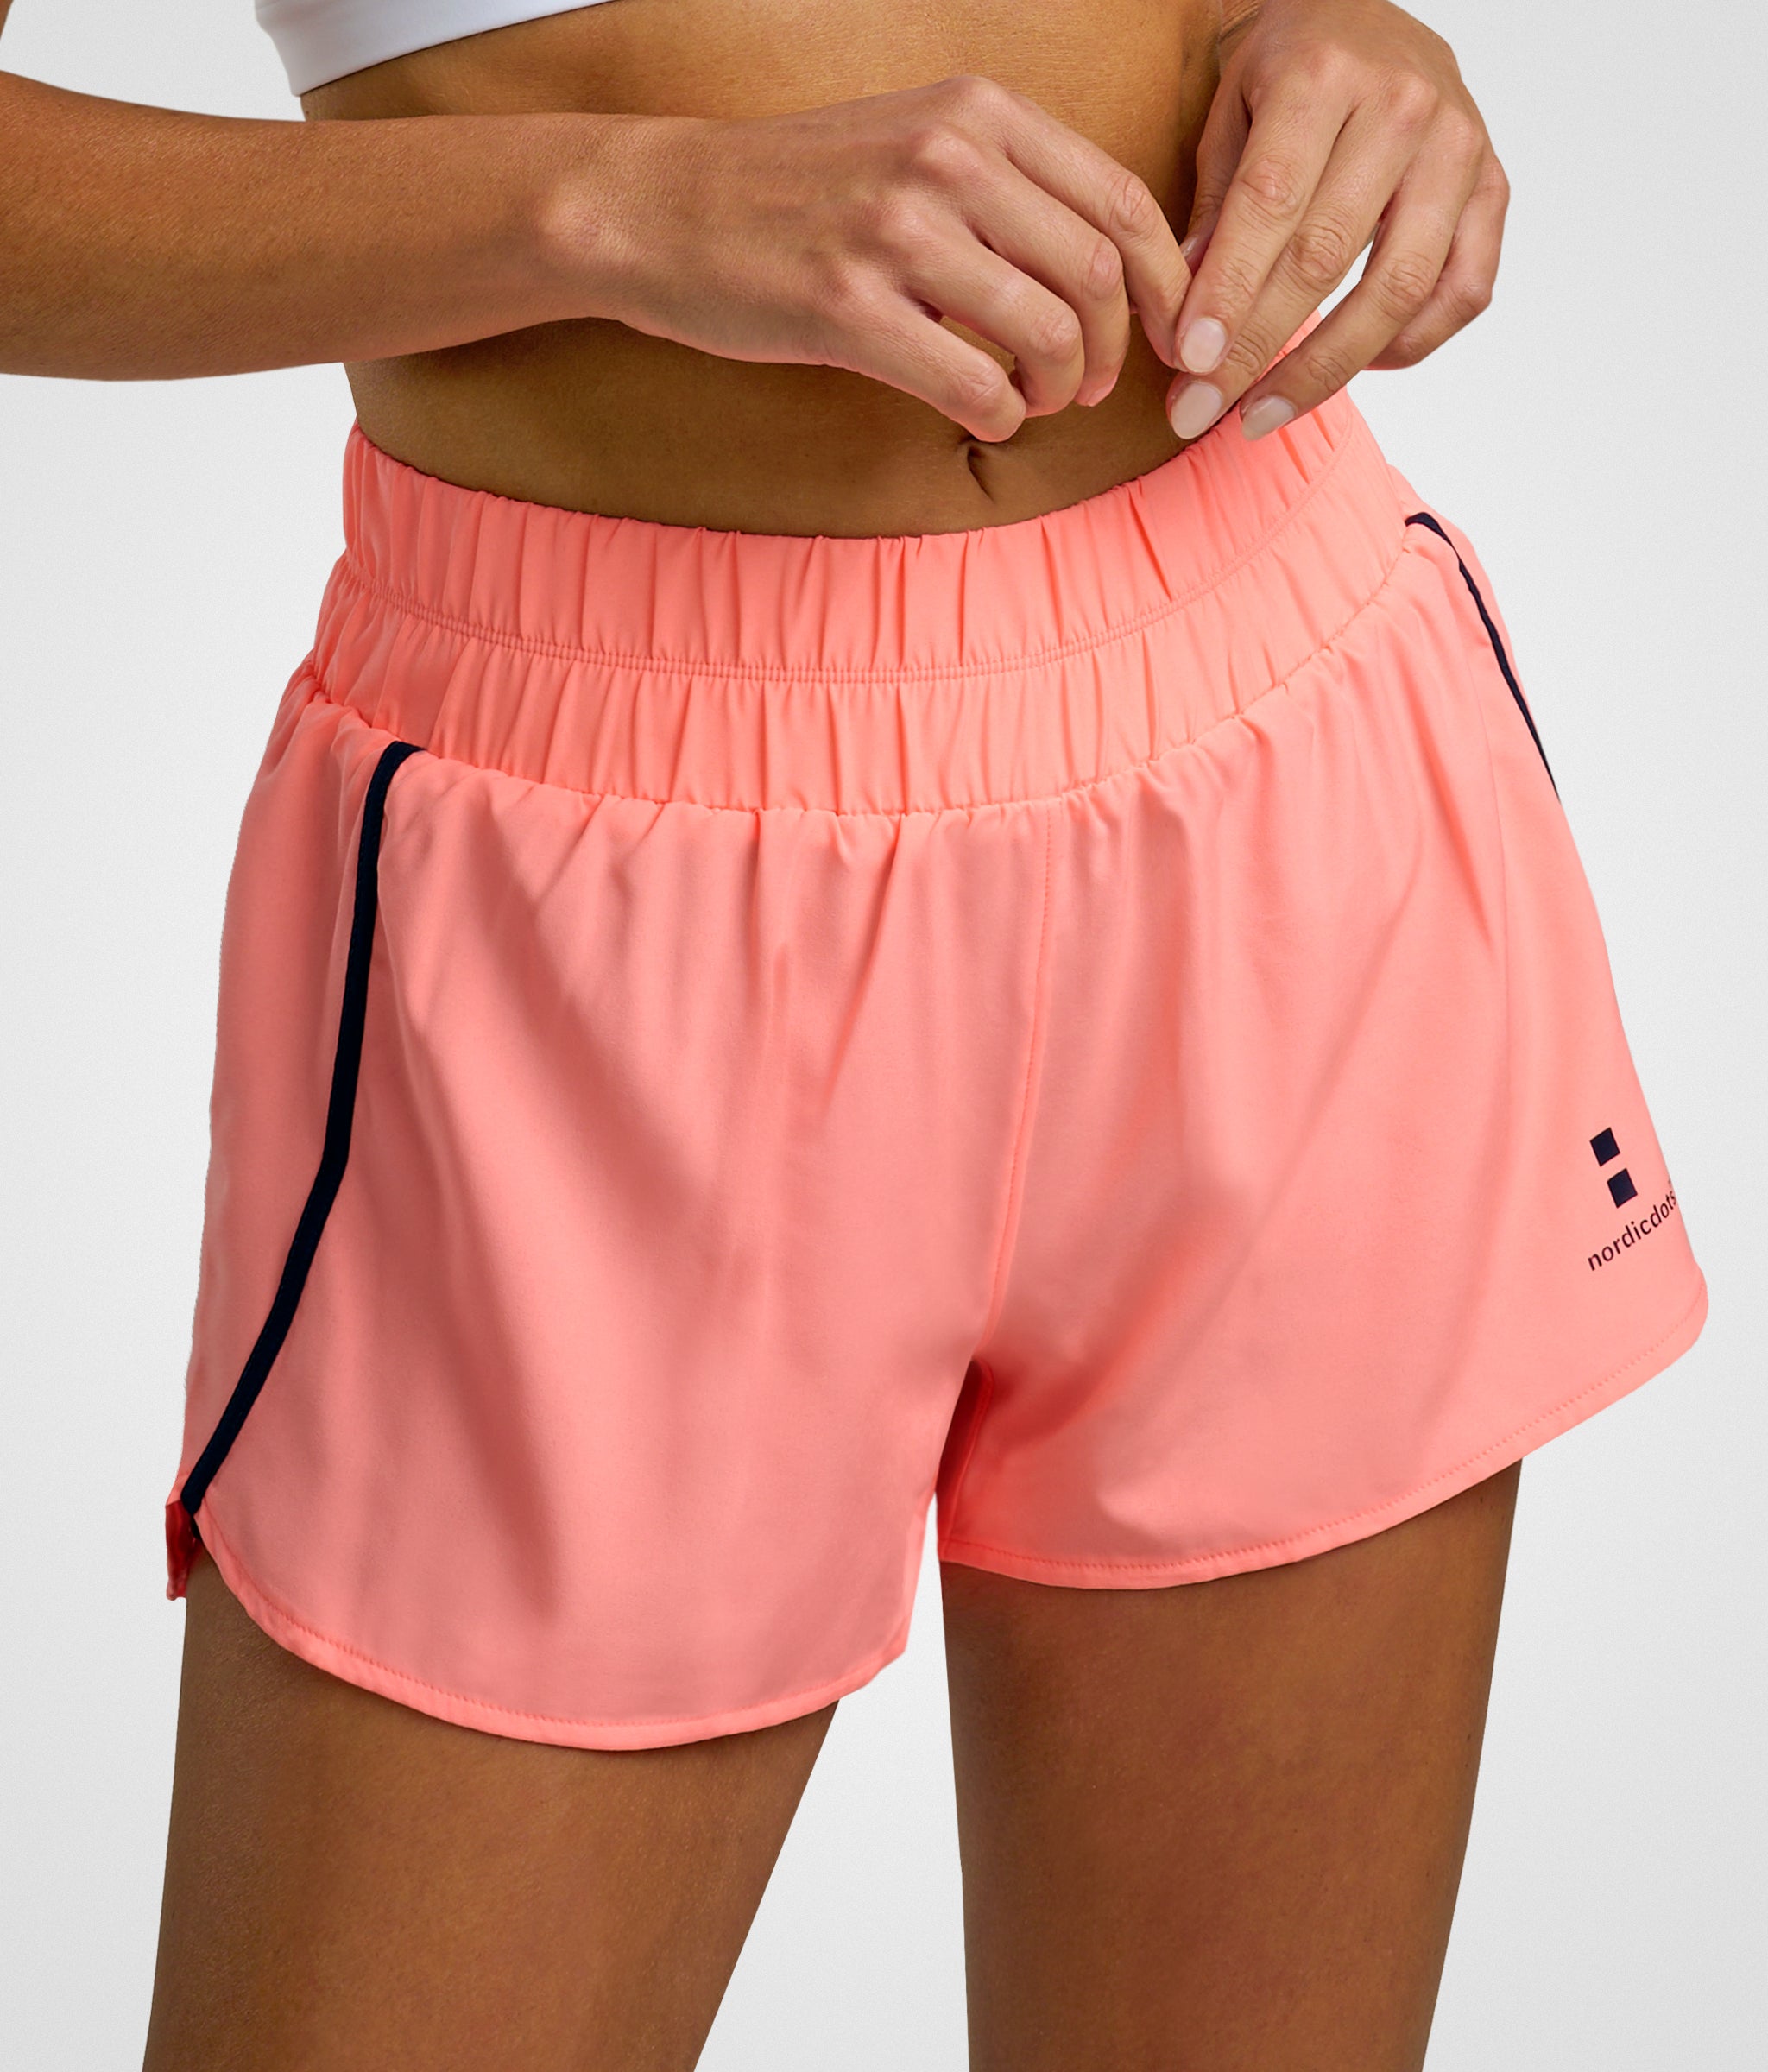 nordicdots tennis padel fitness women's shorts nordicdots.com